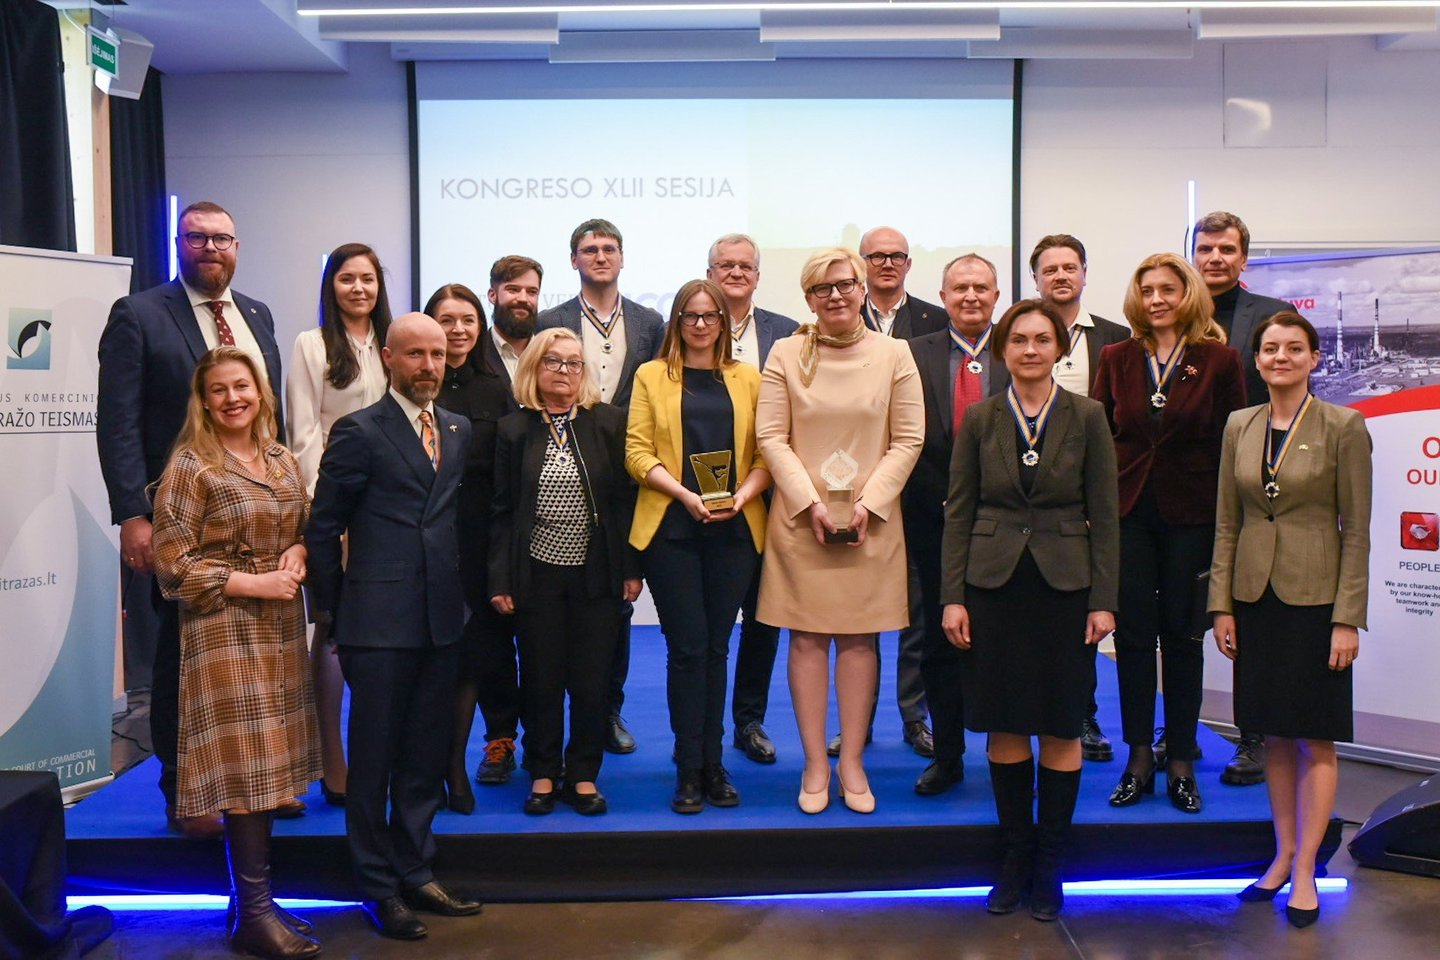 Gegužės 4 d. Vilnius Tech Park vyko LVK Kongresas. Renginyje įteikti tradiciniai apdovanojimai išskirtiniais nuopelnais verslo bendruomenei ir Lietuvai pasižymėjusiems visuomenininkams, verslininkams ir valstybės pareigūnams.<br>Pranešimo autorių nuotr.